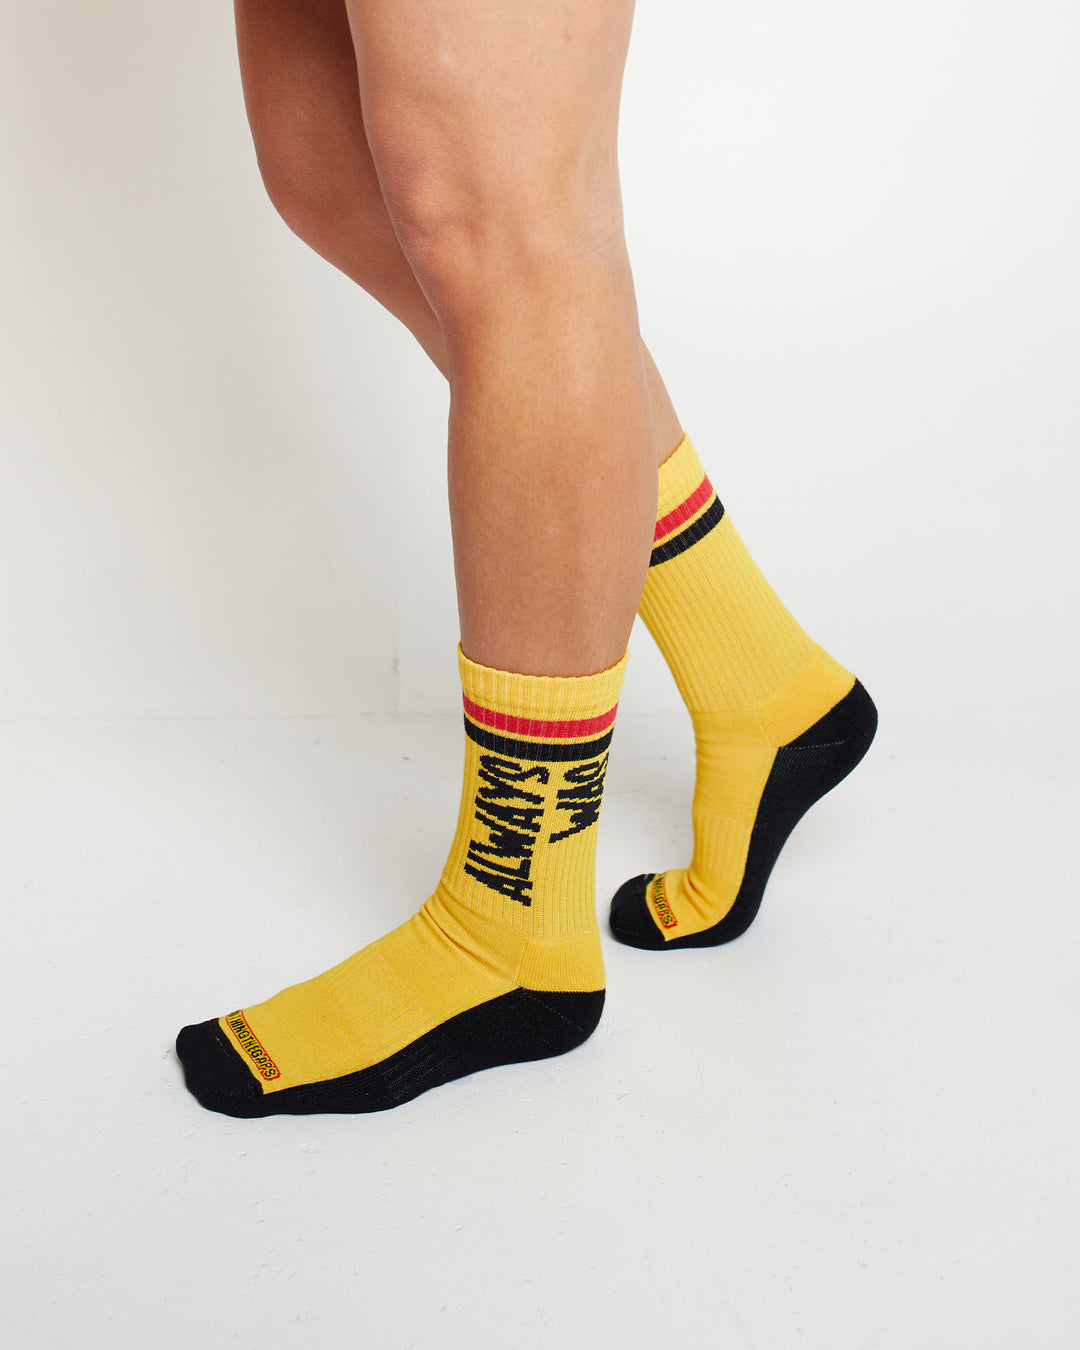 Power Socks 3 pack – Clothing The Gaps